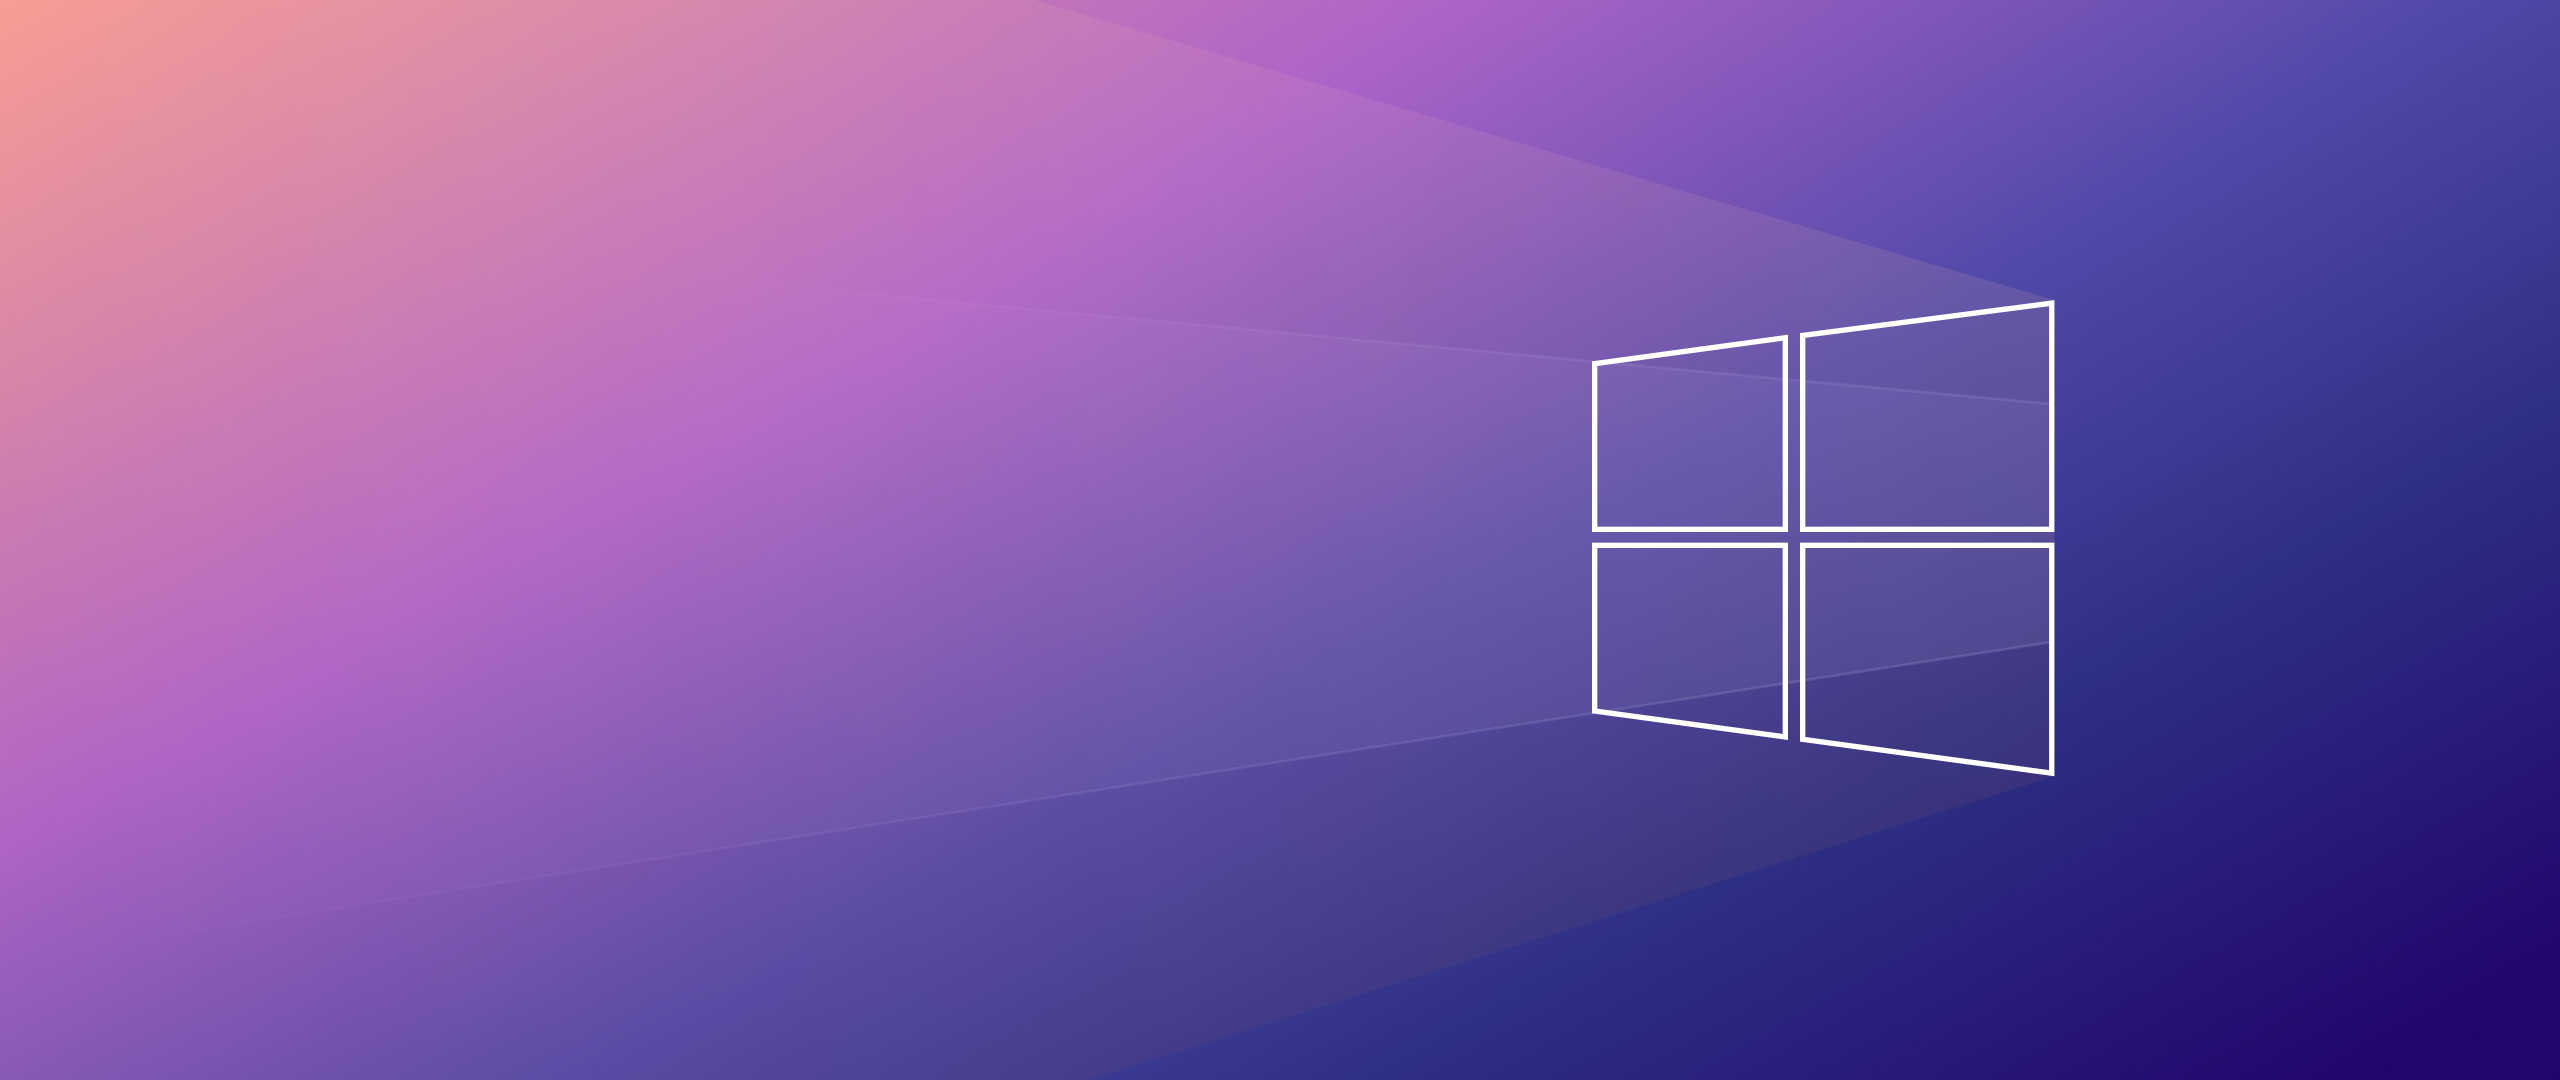 Hình nền Windows 10 4K, gradient, công nghệ, #2218 Bạn là người đam mê công nghệ và yêu thích những hình ảnh ấn tượng? Không nên bỏ qua bộ sưu tập hình nền 4K với ngọn đồi gradient và mã màu #2218, đem đến cho bạn những trải nghiệm thị giác tuyệt vời.